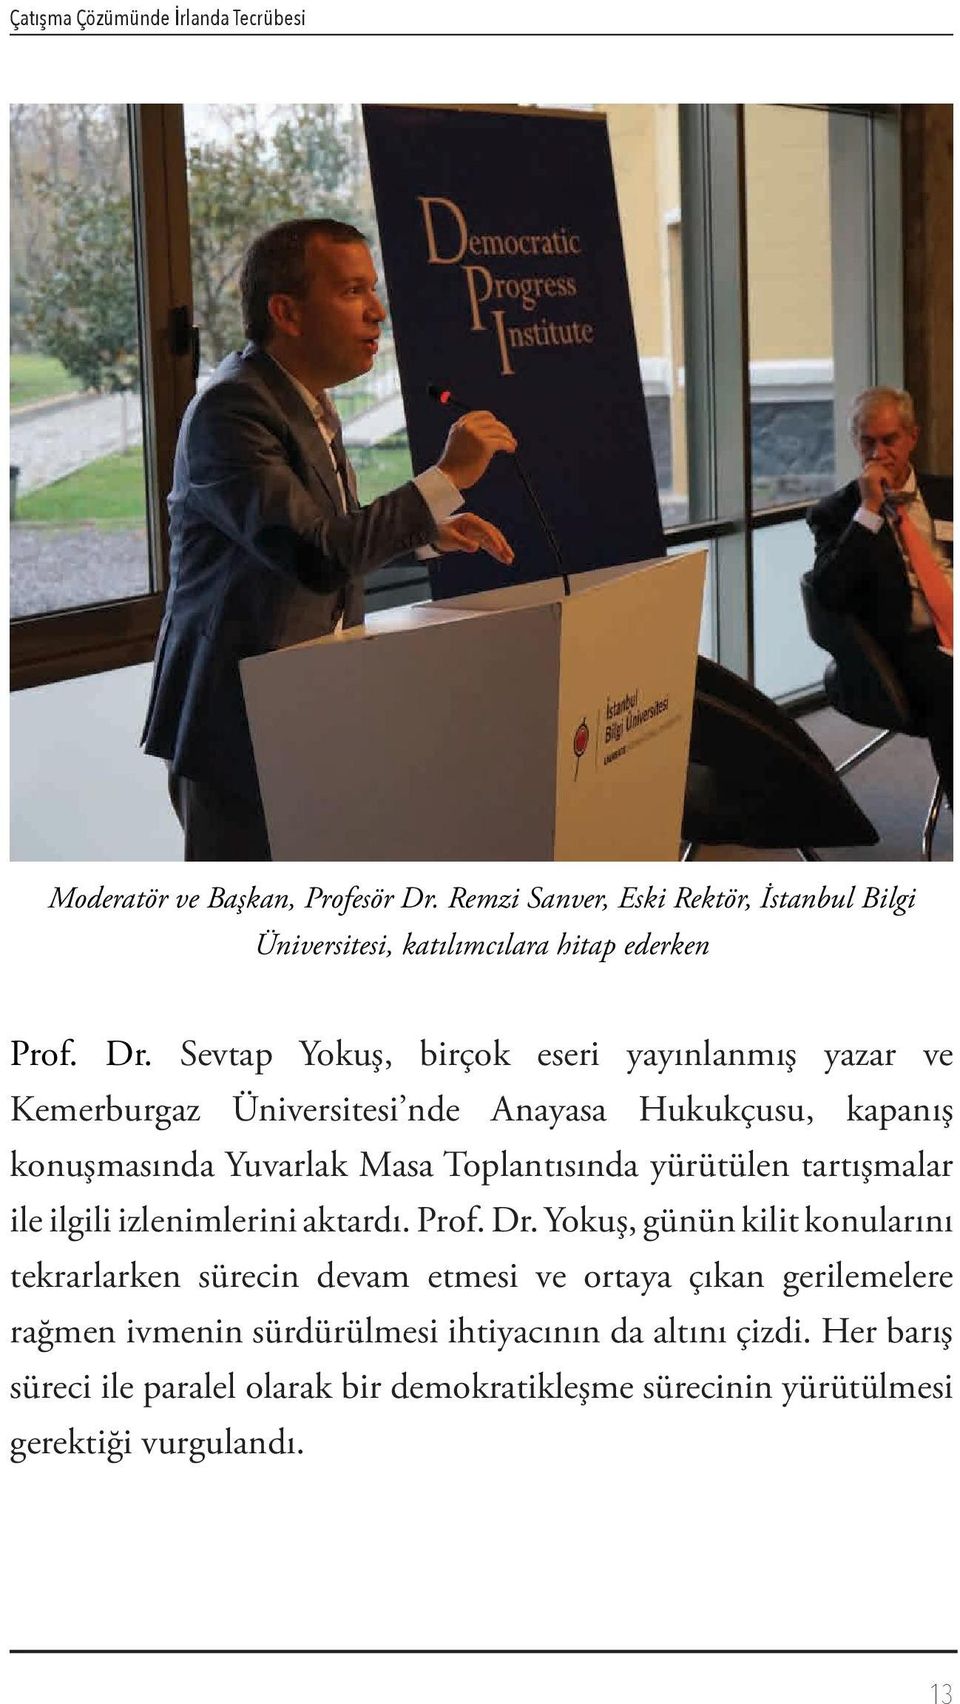 Sevtap Yokuş, birçok eseri yayınlanmış yazar ve Kemerburgaz Üniversitesi nde Anayasa Hukukçusu, kapanış konuşmasında Yuvarlak Masa Toplantısında yürütülen